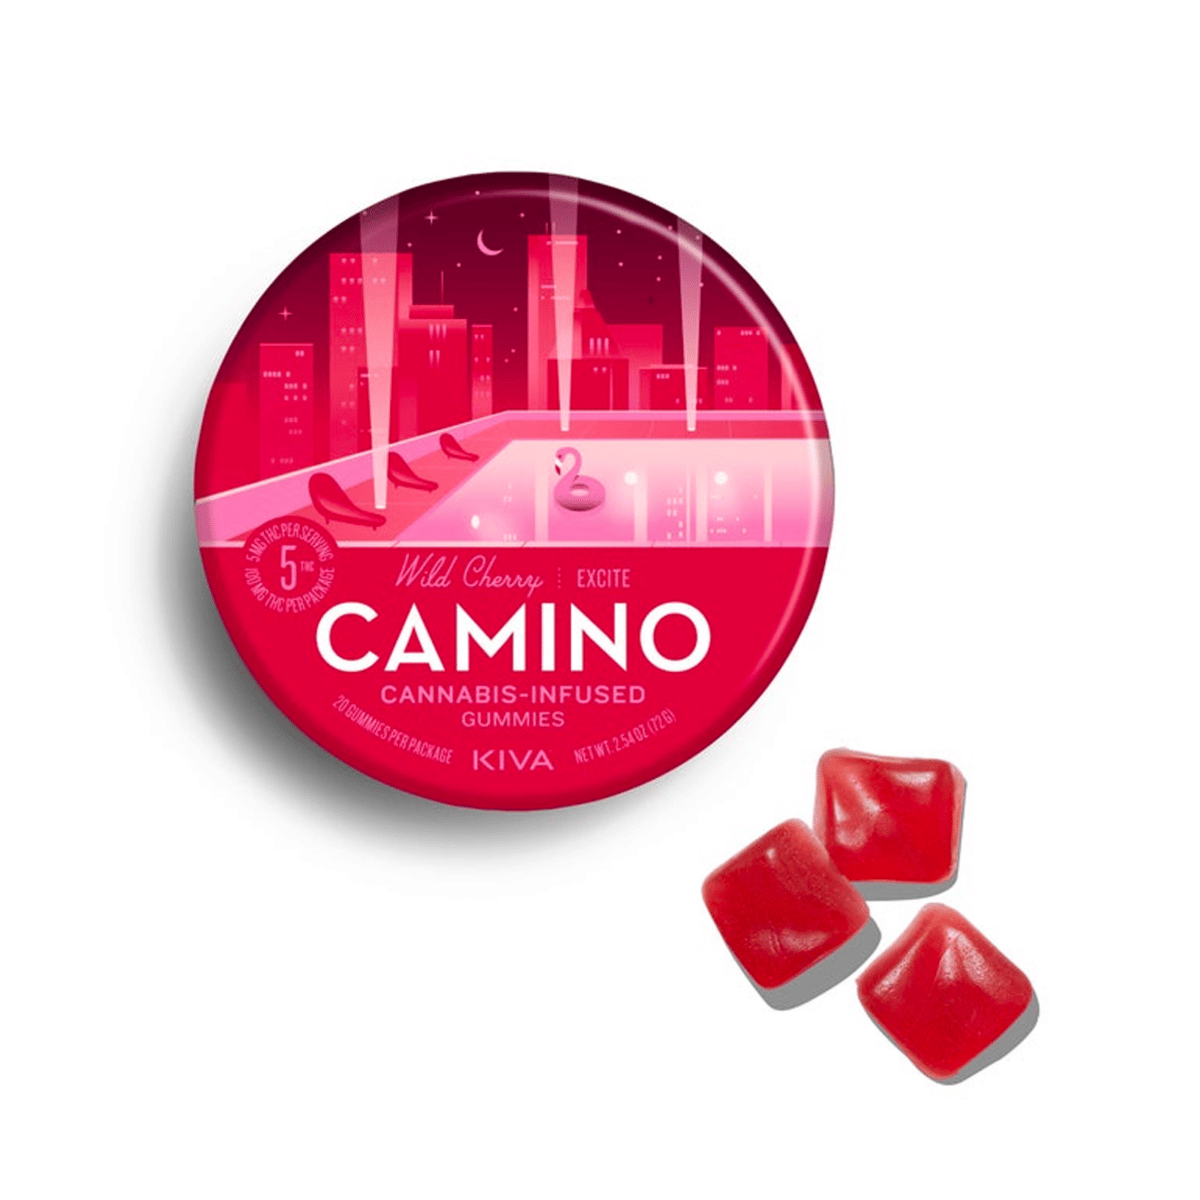 Kiva Wild Cherry Excite Camino Gummies - 20-Pack